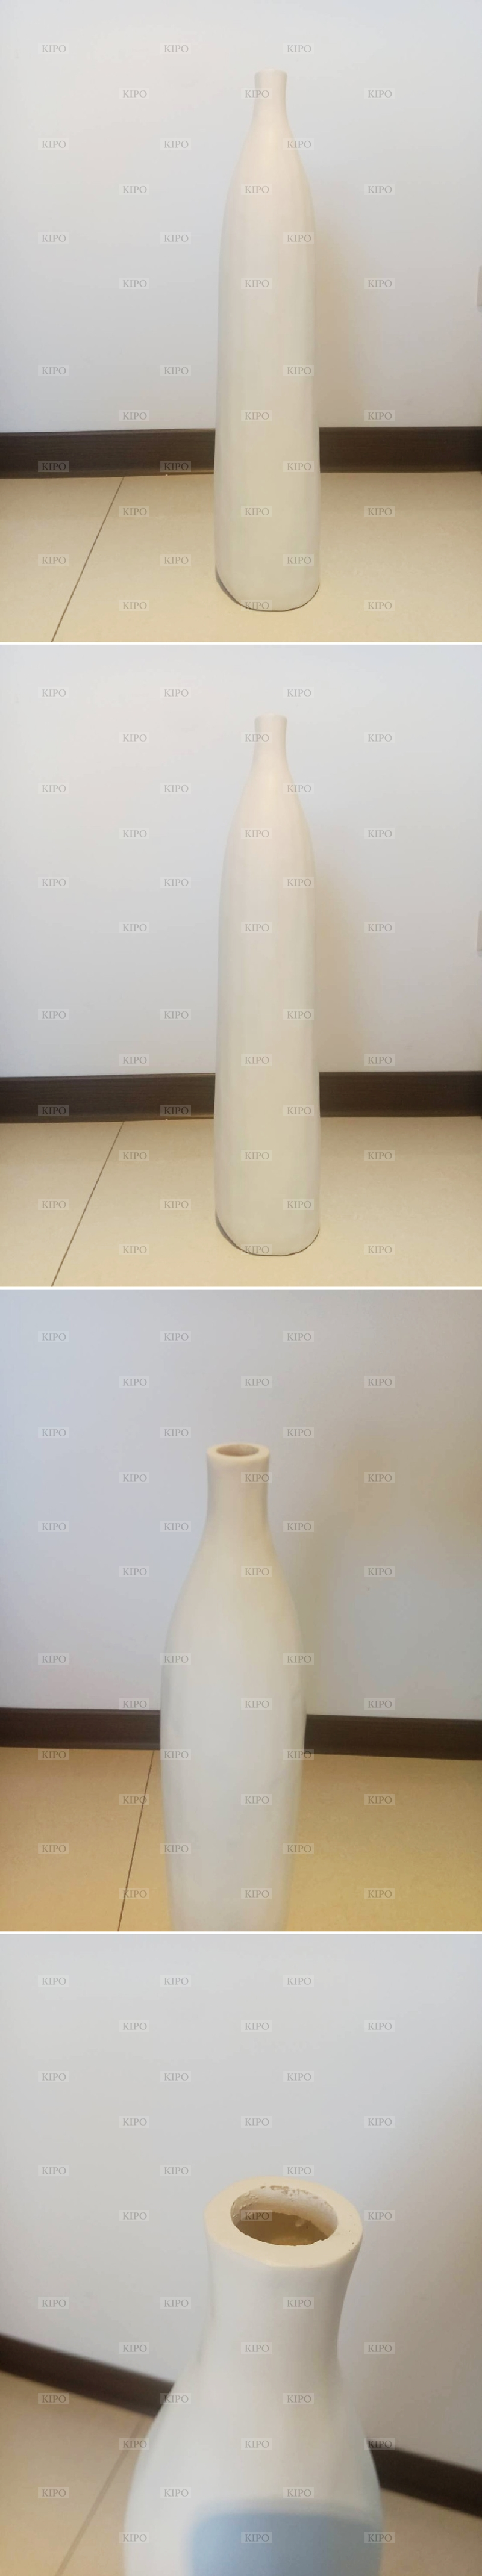 KIPO-落地擺件大花瓶現代簡約創意軟裝裝飾品客廳玄關電視櫃旁擺設花器-BJD005104A